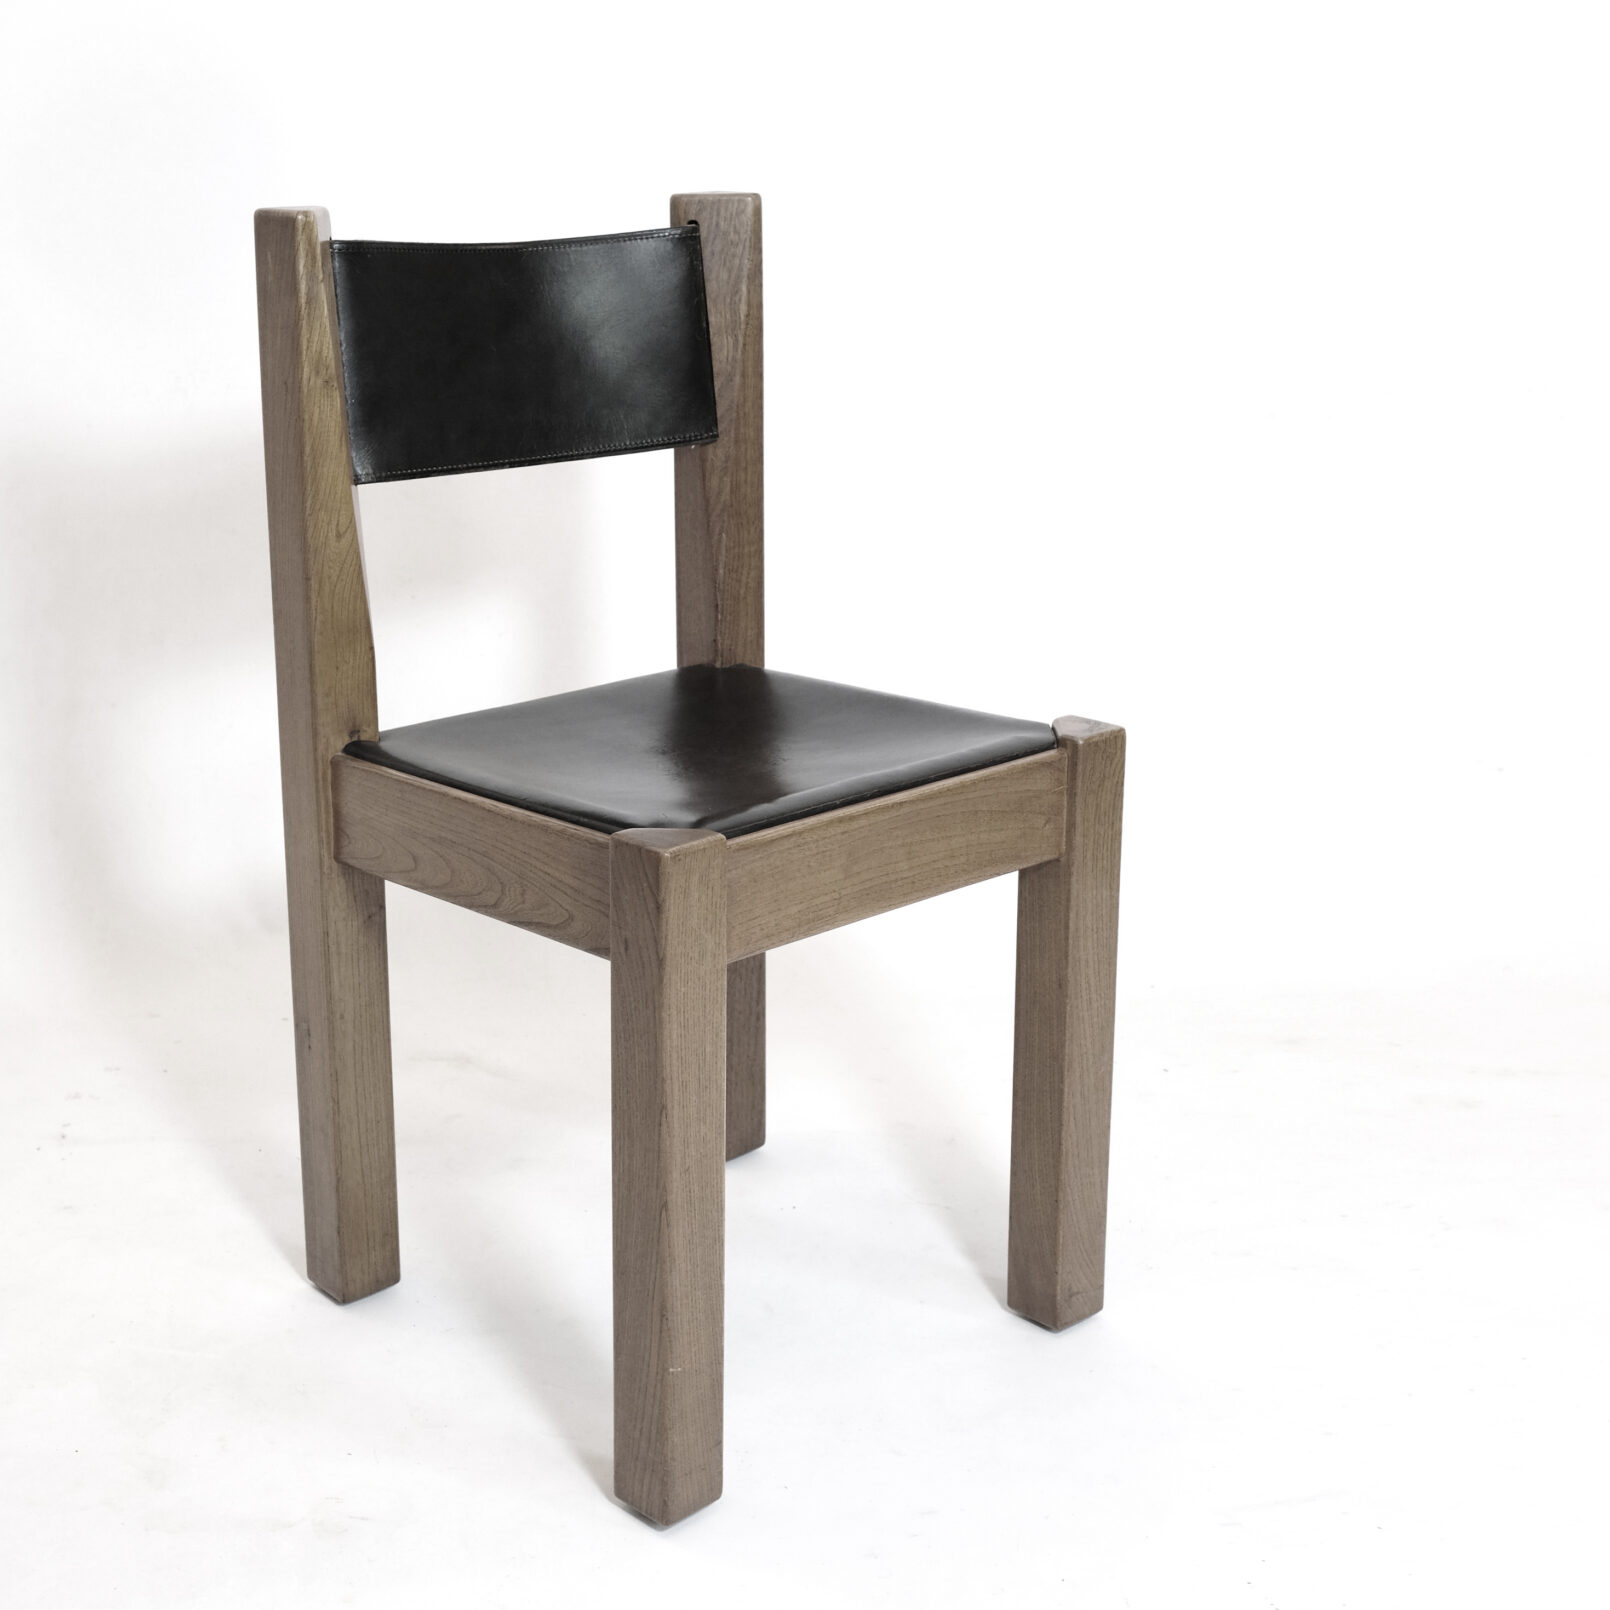 De l’Orme Editeur, solid elm and leather chair, 1970s.